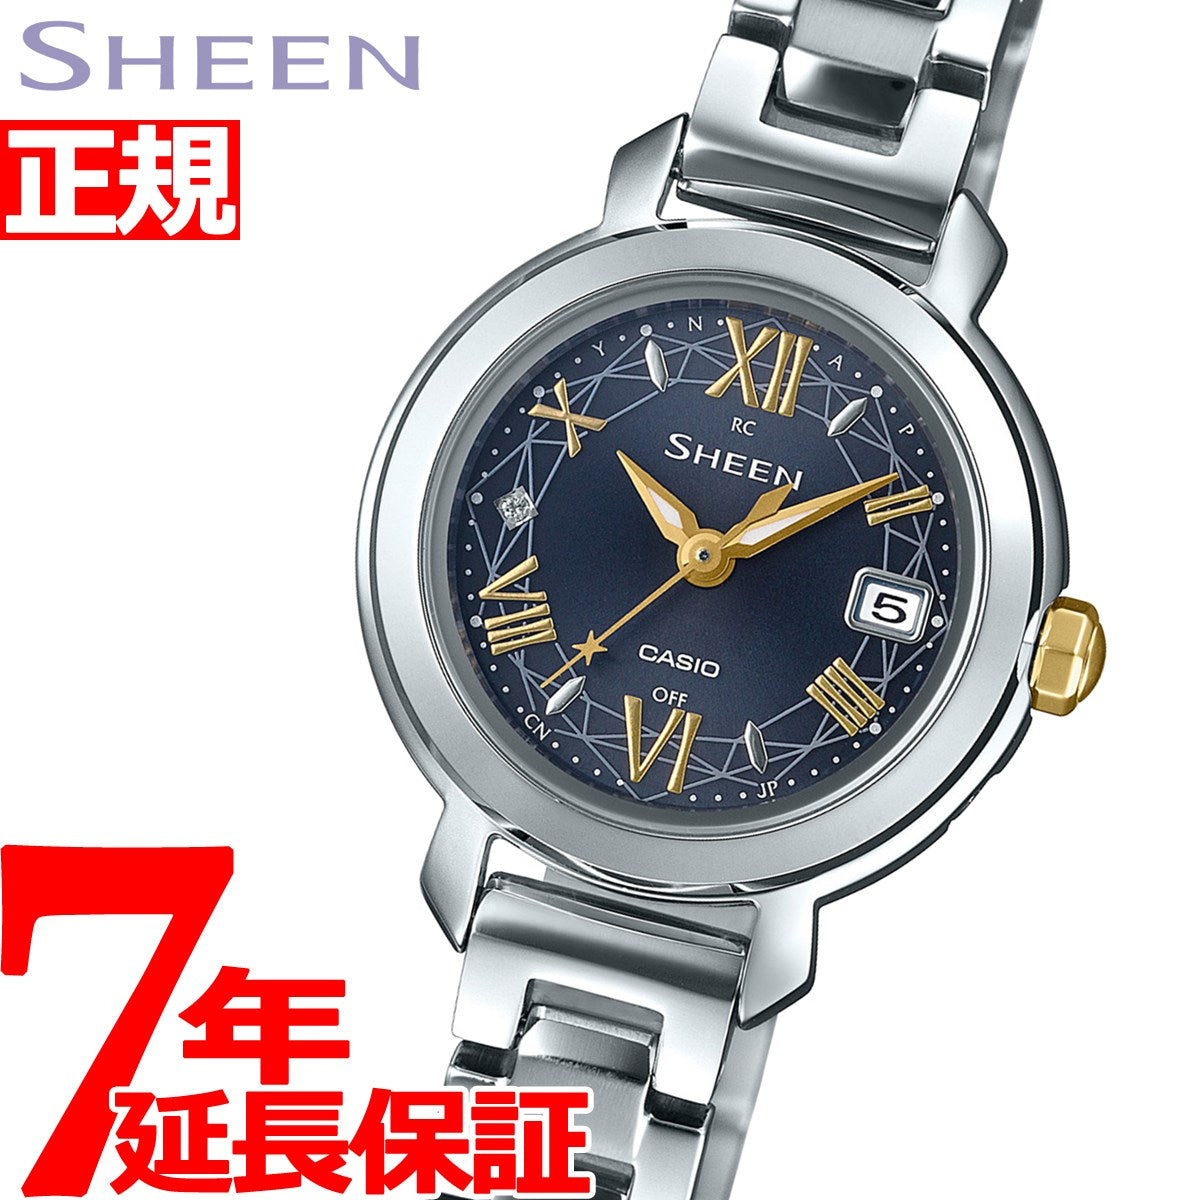 カシオ シーン CASIO SHEEN 電波 ソーラー 電波時計 腕時計 レディース SHW-5300D-2AJF – neel selectshop